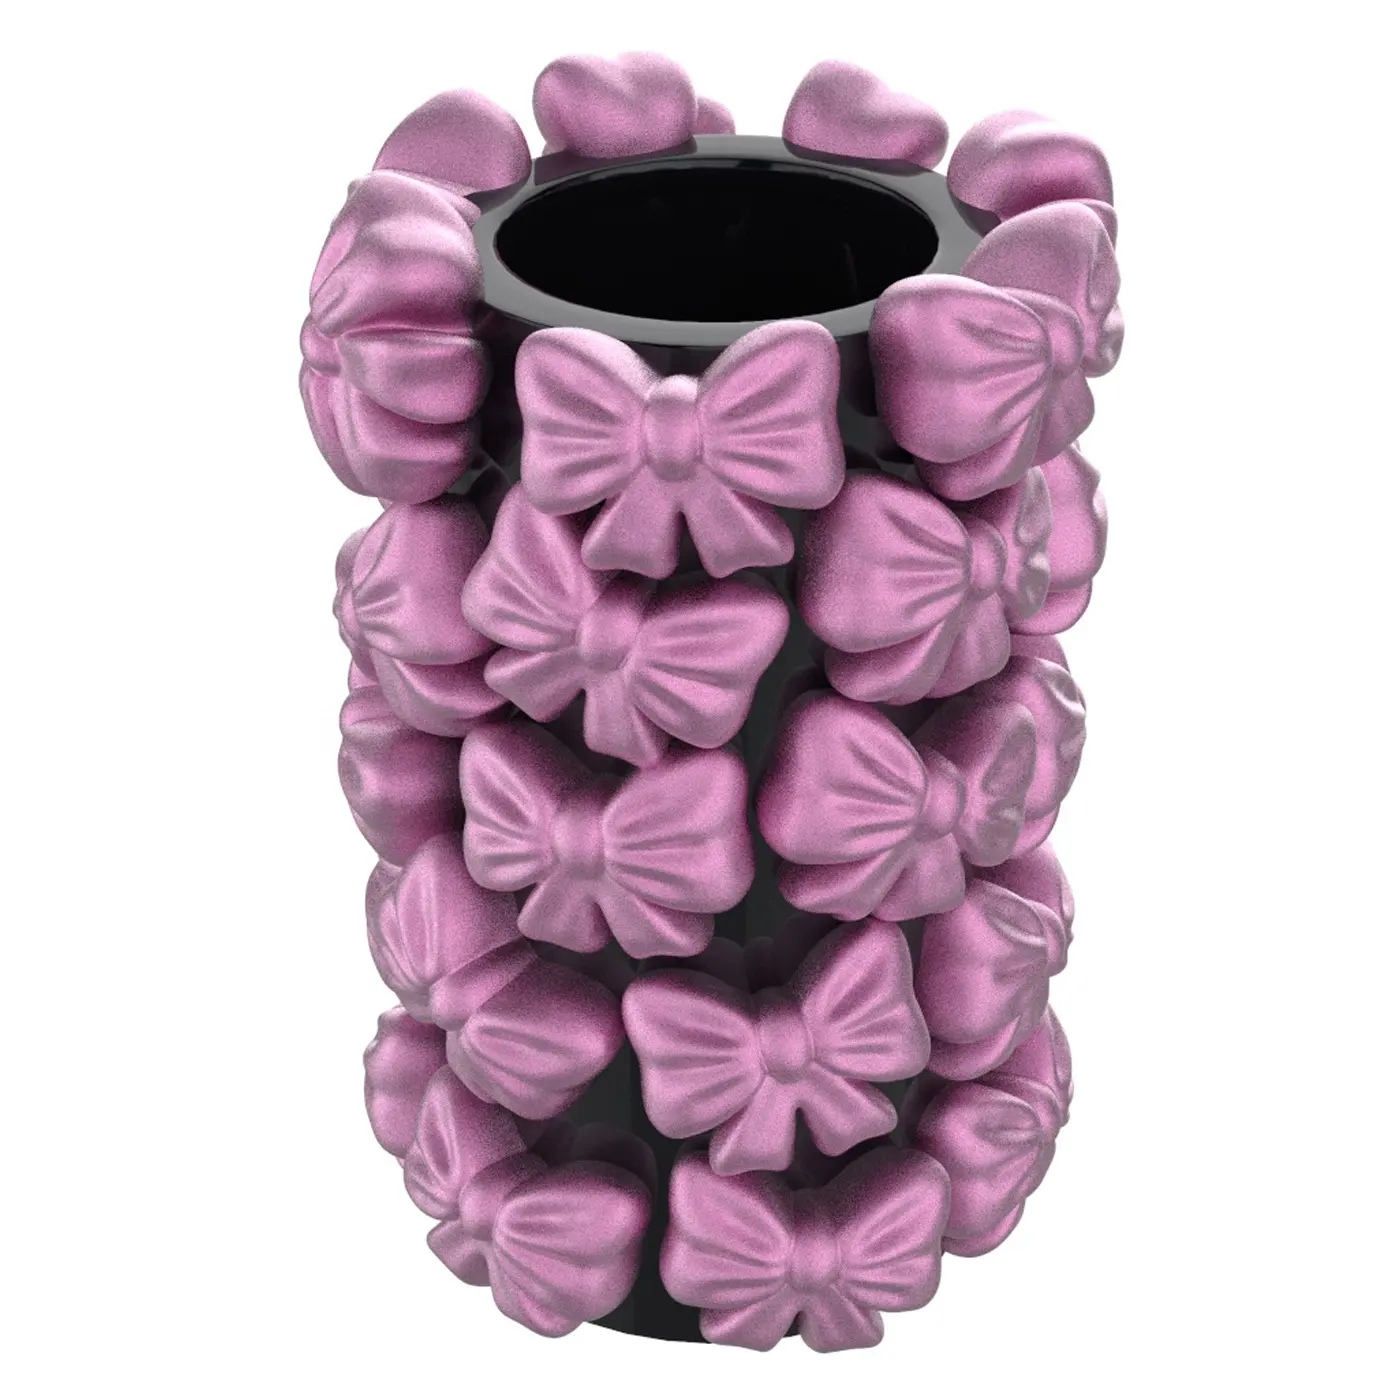 Individuelle großhandel moderne kunst zimmer dekoration keramik unregelmäßig schwarz rosa schleifenknoten blumenvase für haus inneneinrichtung